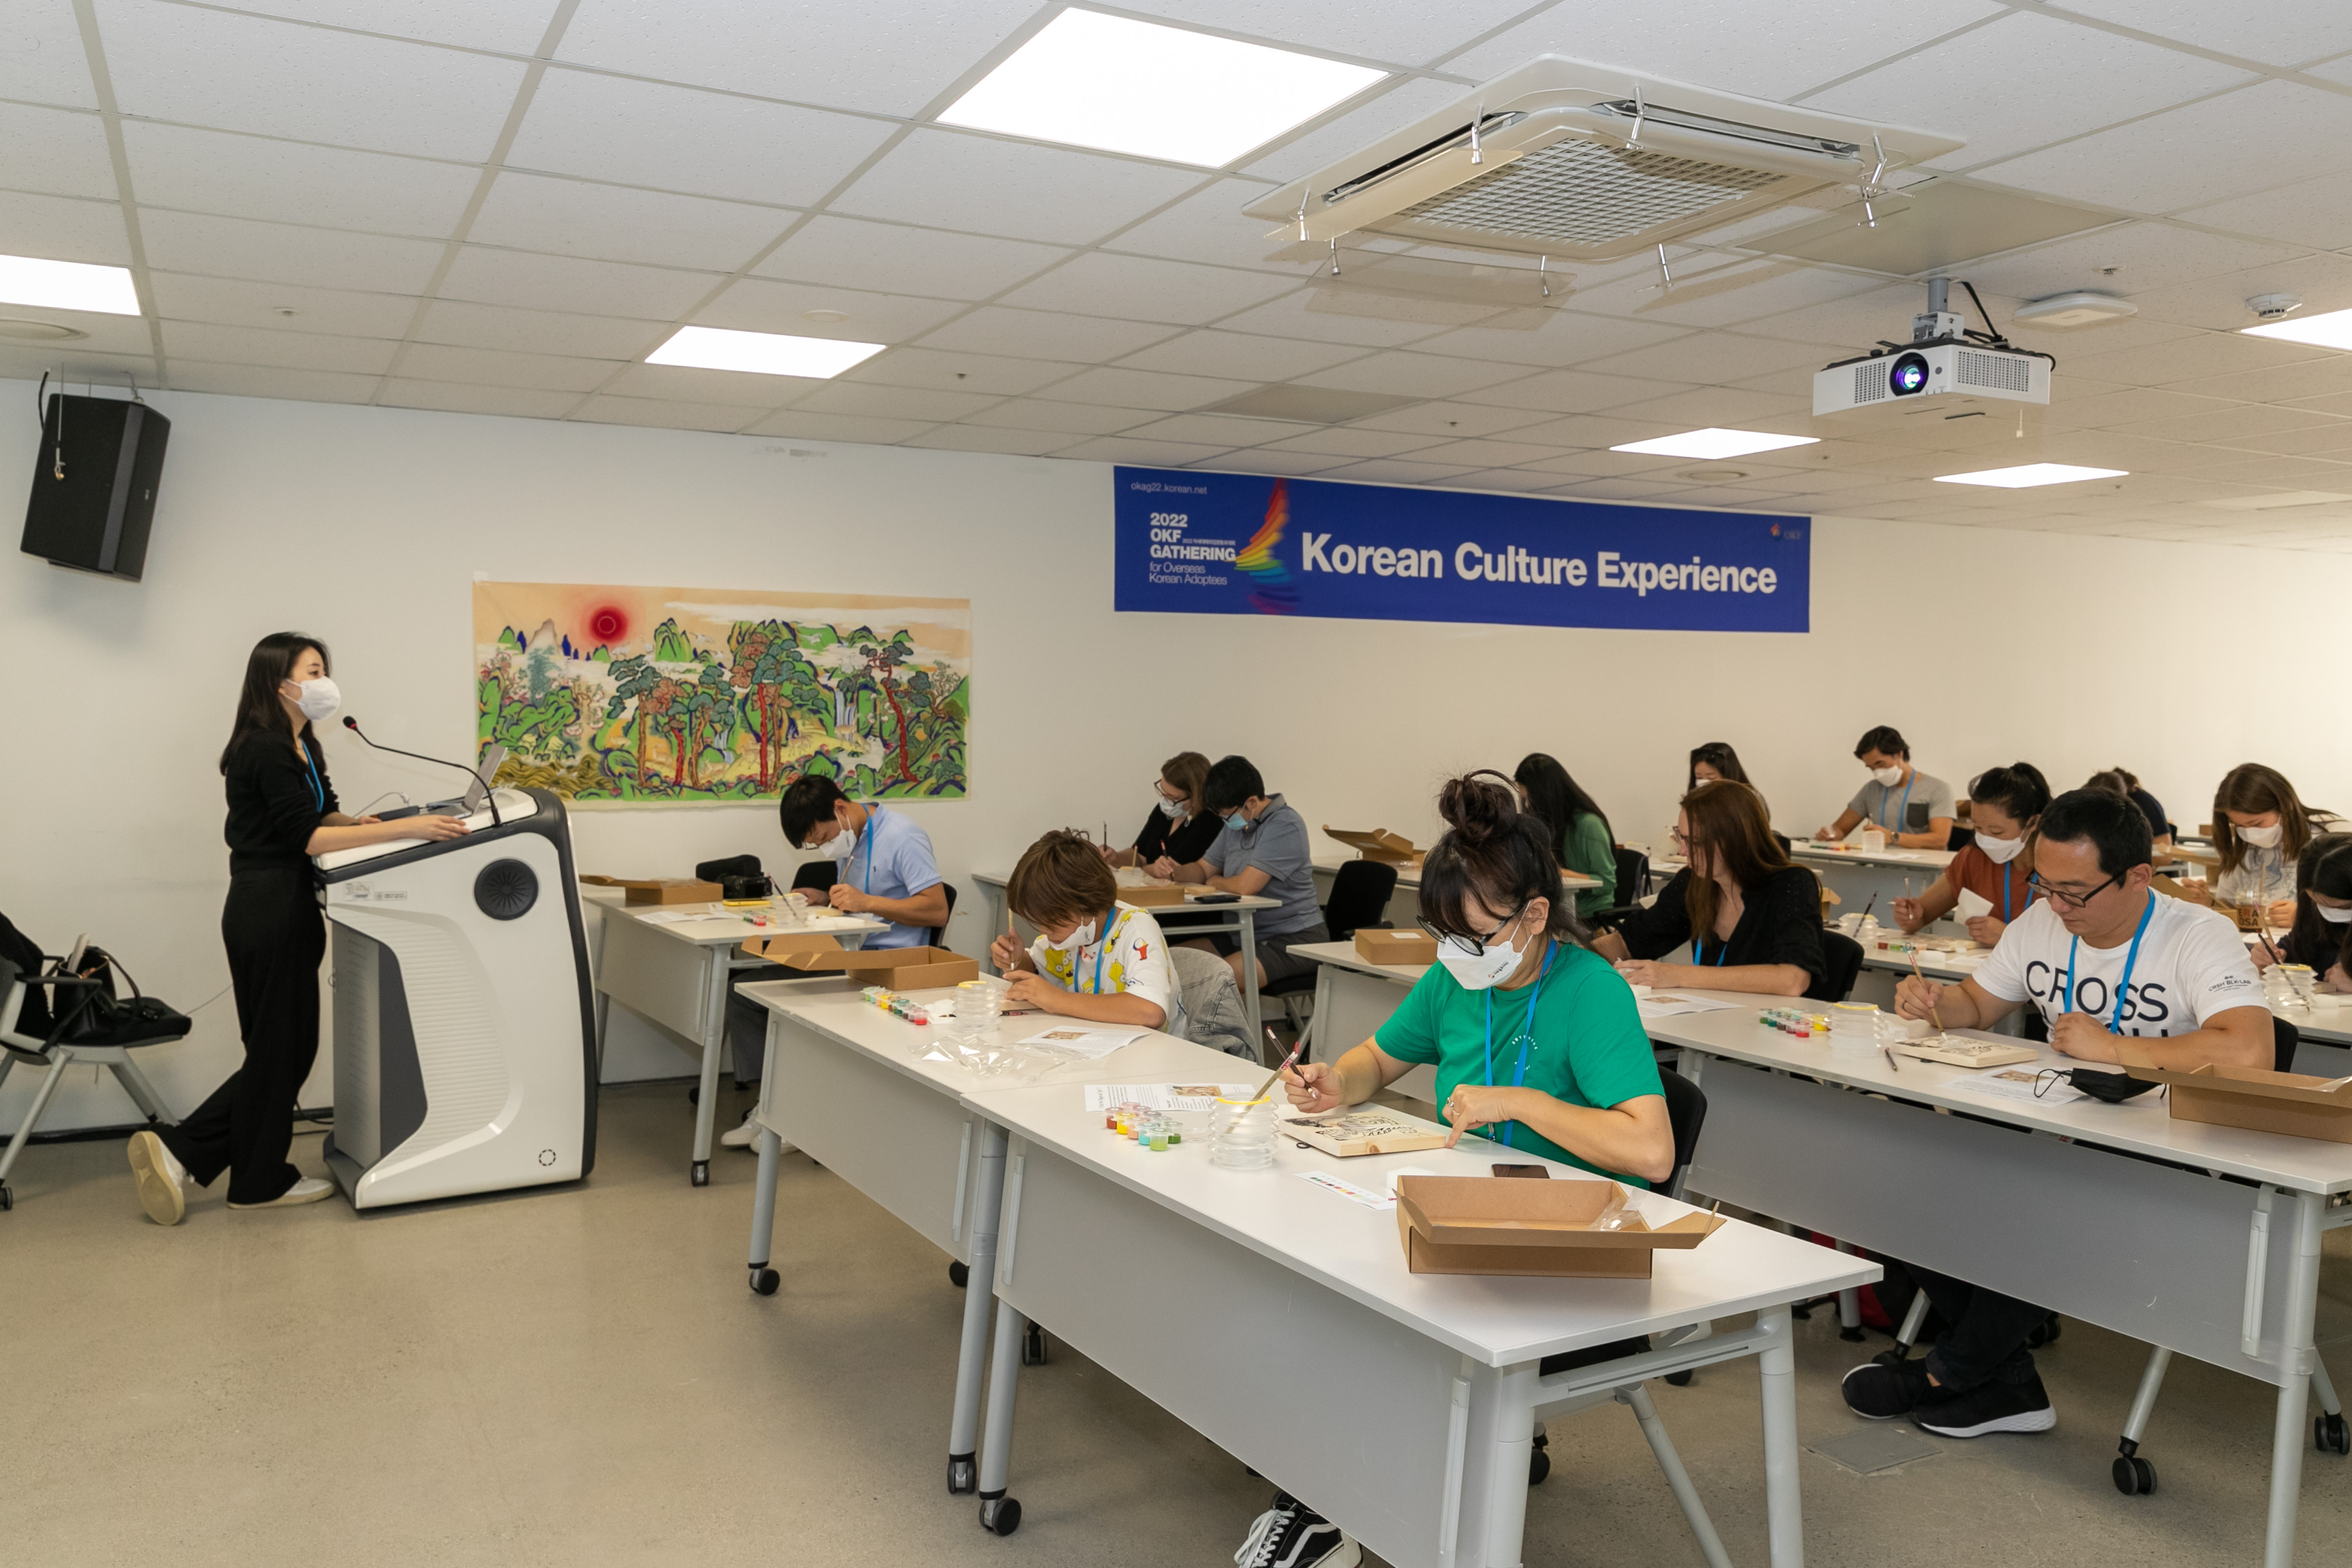 [Опыт корейской культуры | K-Art] Усыновленные корейские дети рисуют свои собственные красивые народные картины, используя традиционные пять цветов (желтый, красный, синий, черный и белый).